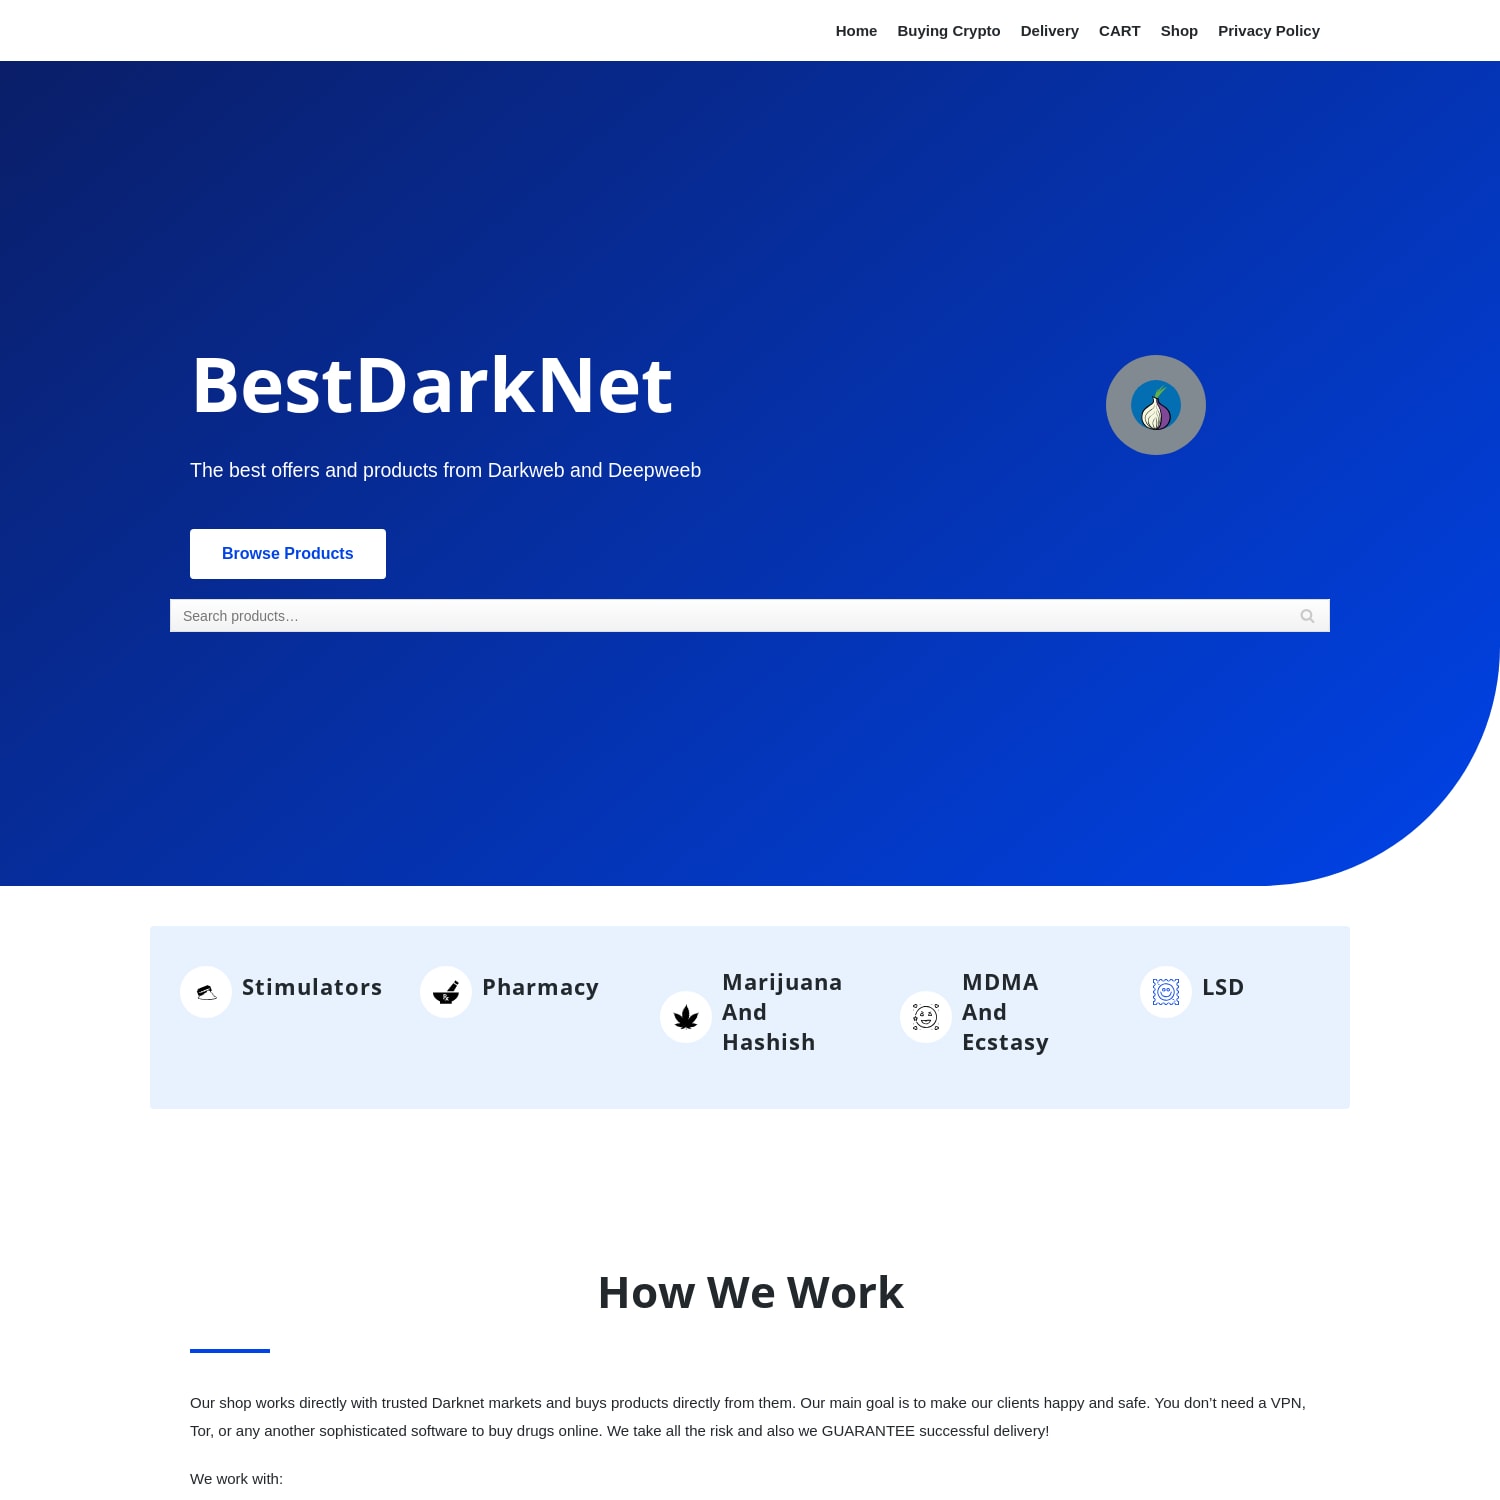 Buy Drugs Online at BestDarkNet.com